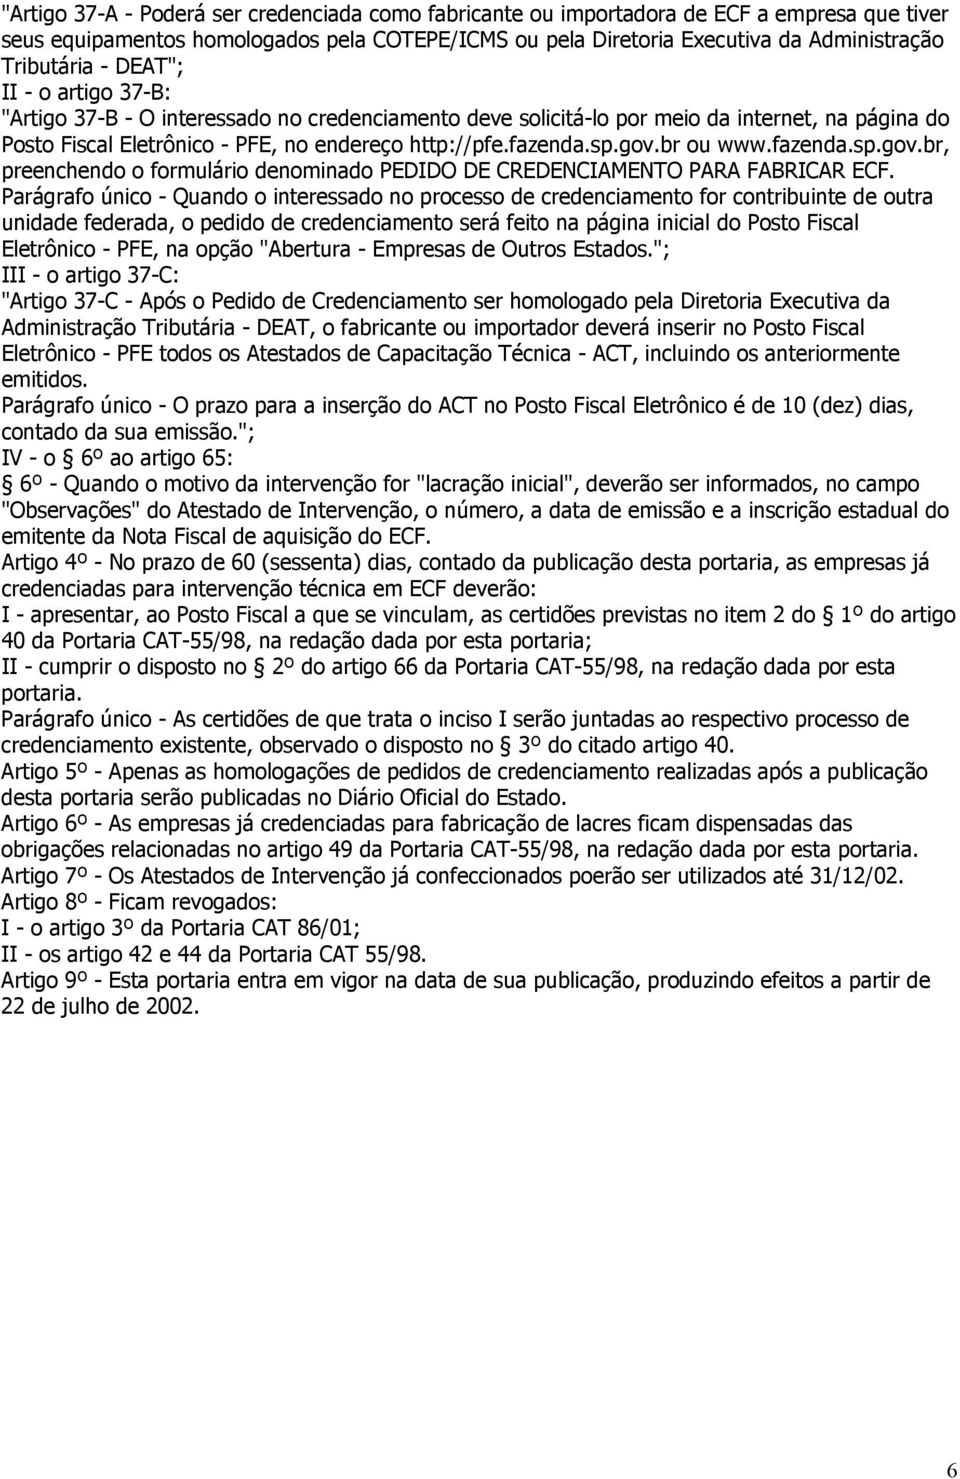 br ou www.fazenda.sp.gov.br, preenchendo o formulário denominado PEDIDO DE CREDENCIAMENTO PARA FABRICAR ECF.